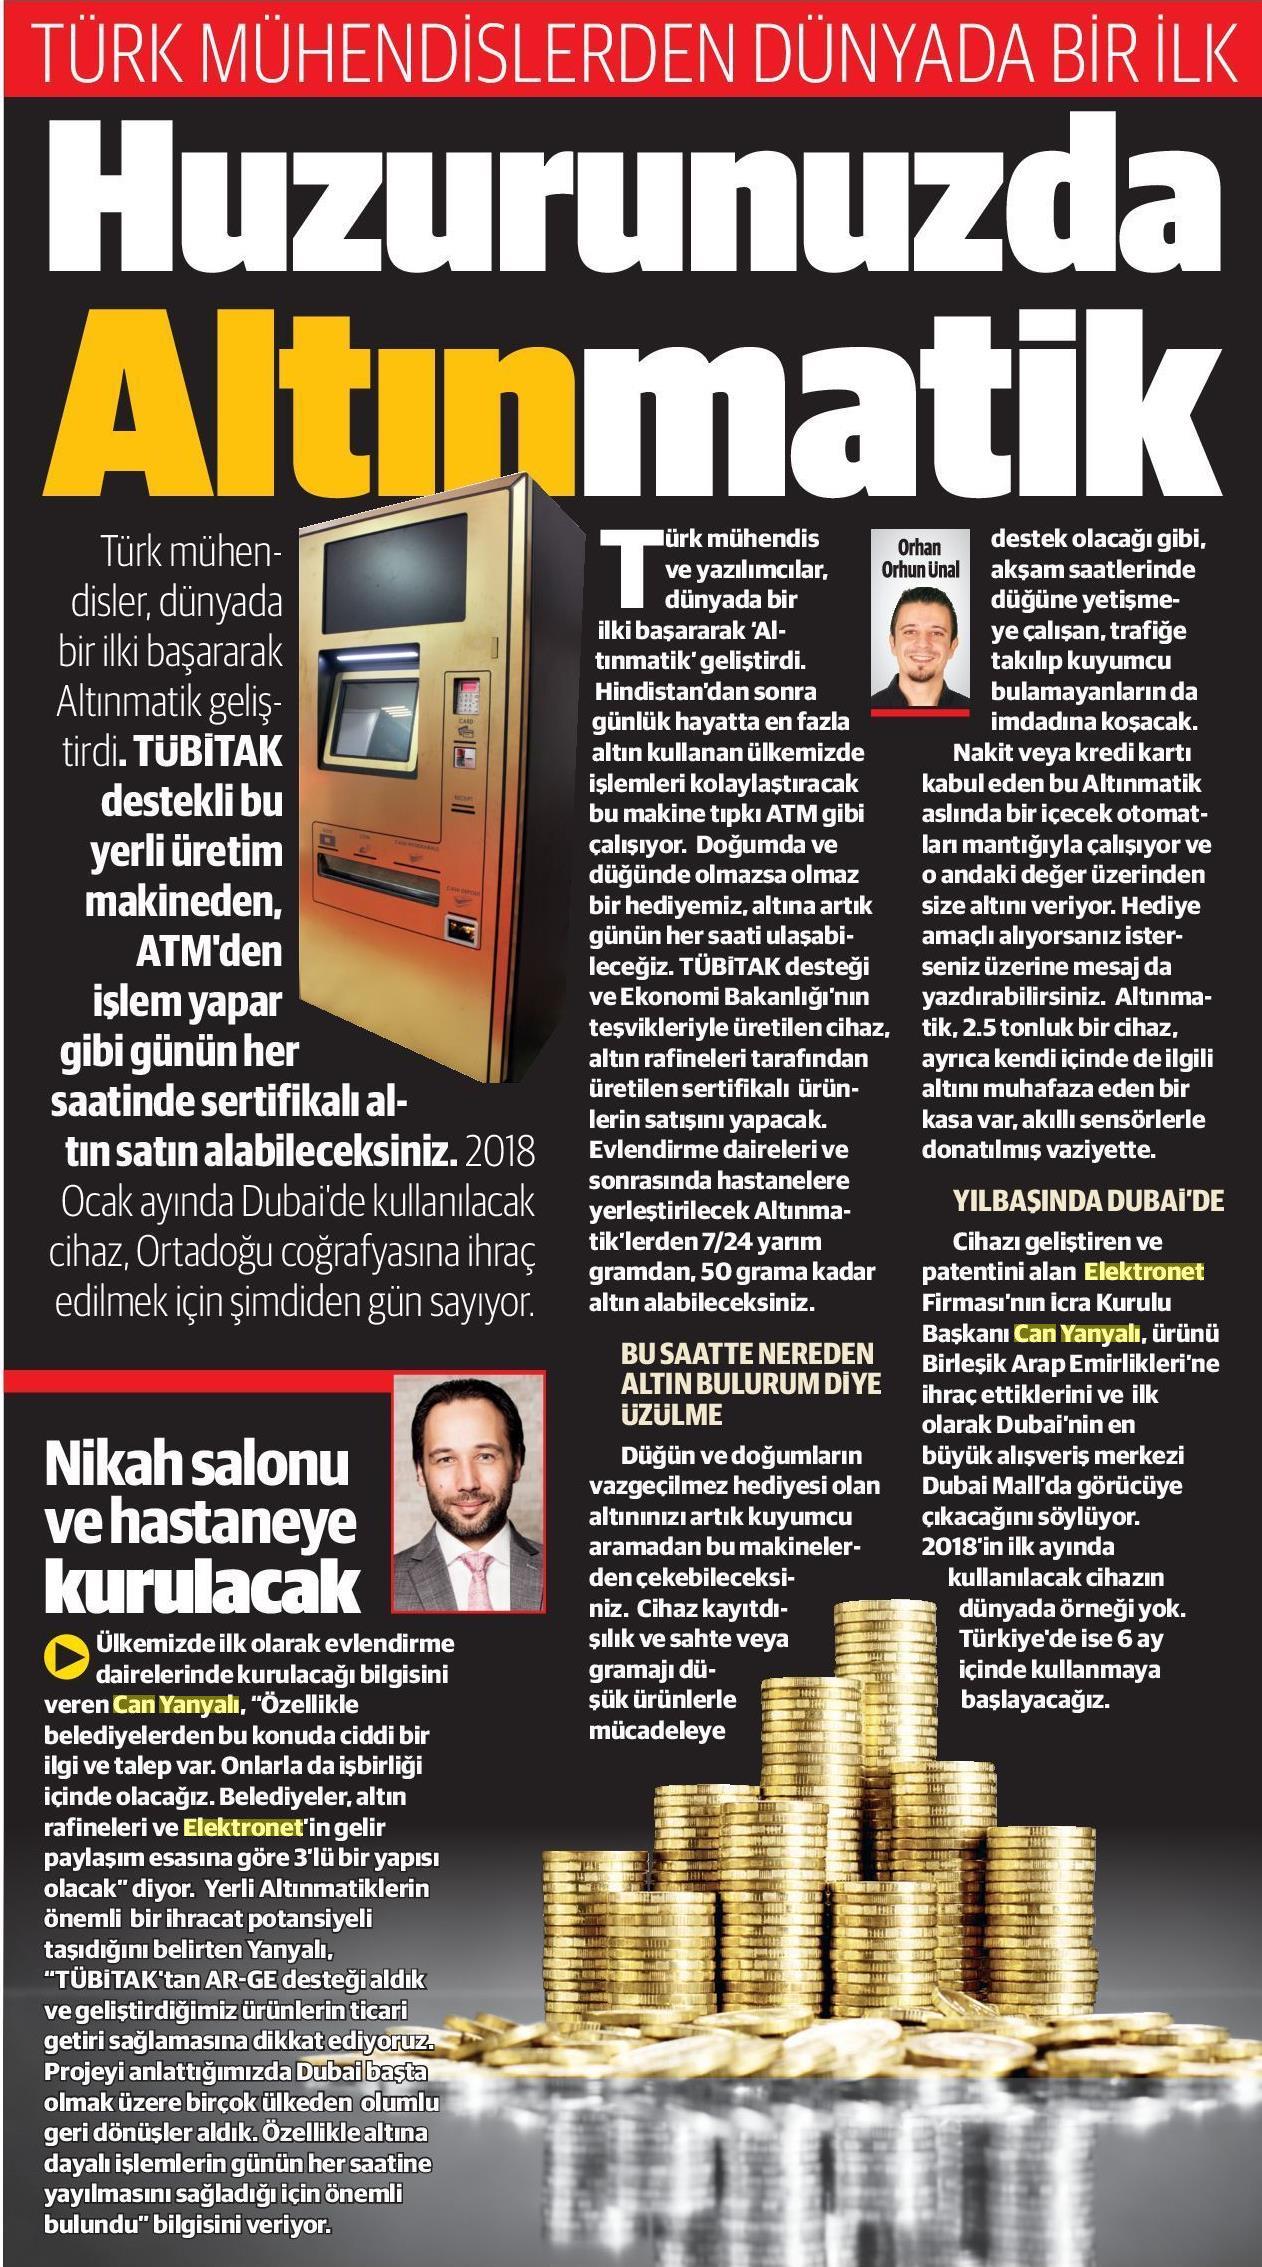 Altınmatik Yeni Şafak Gazetesi 11.10.2017